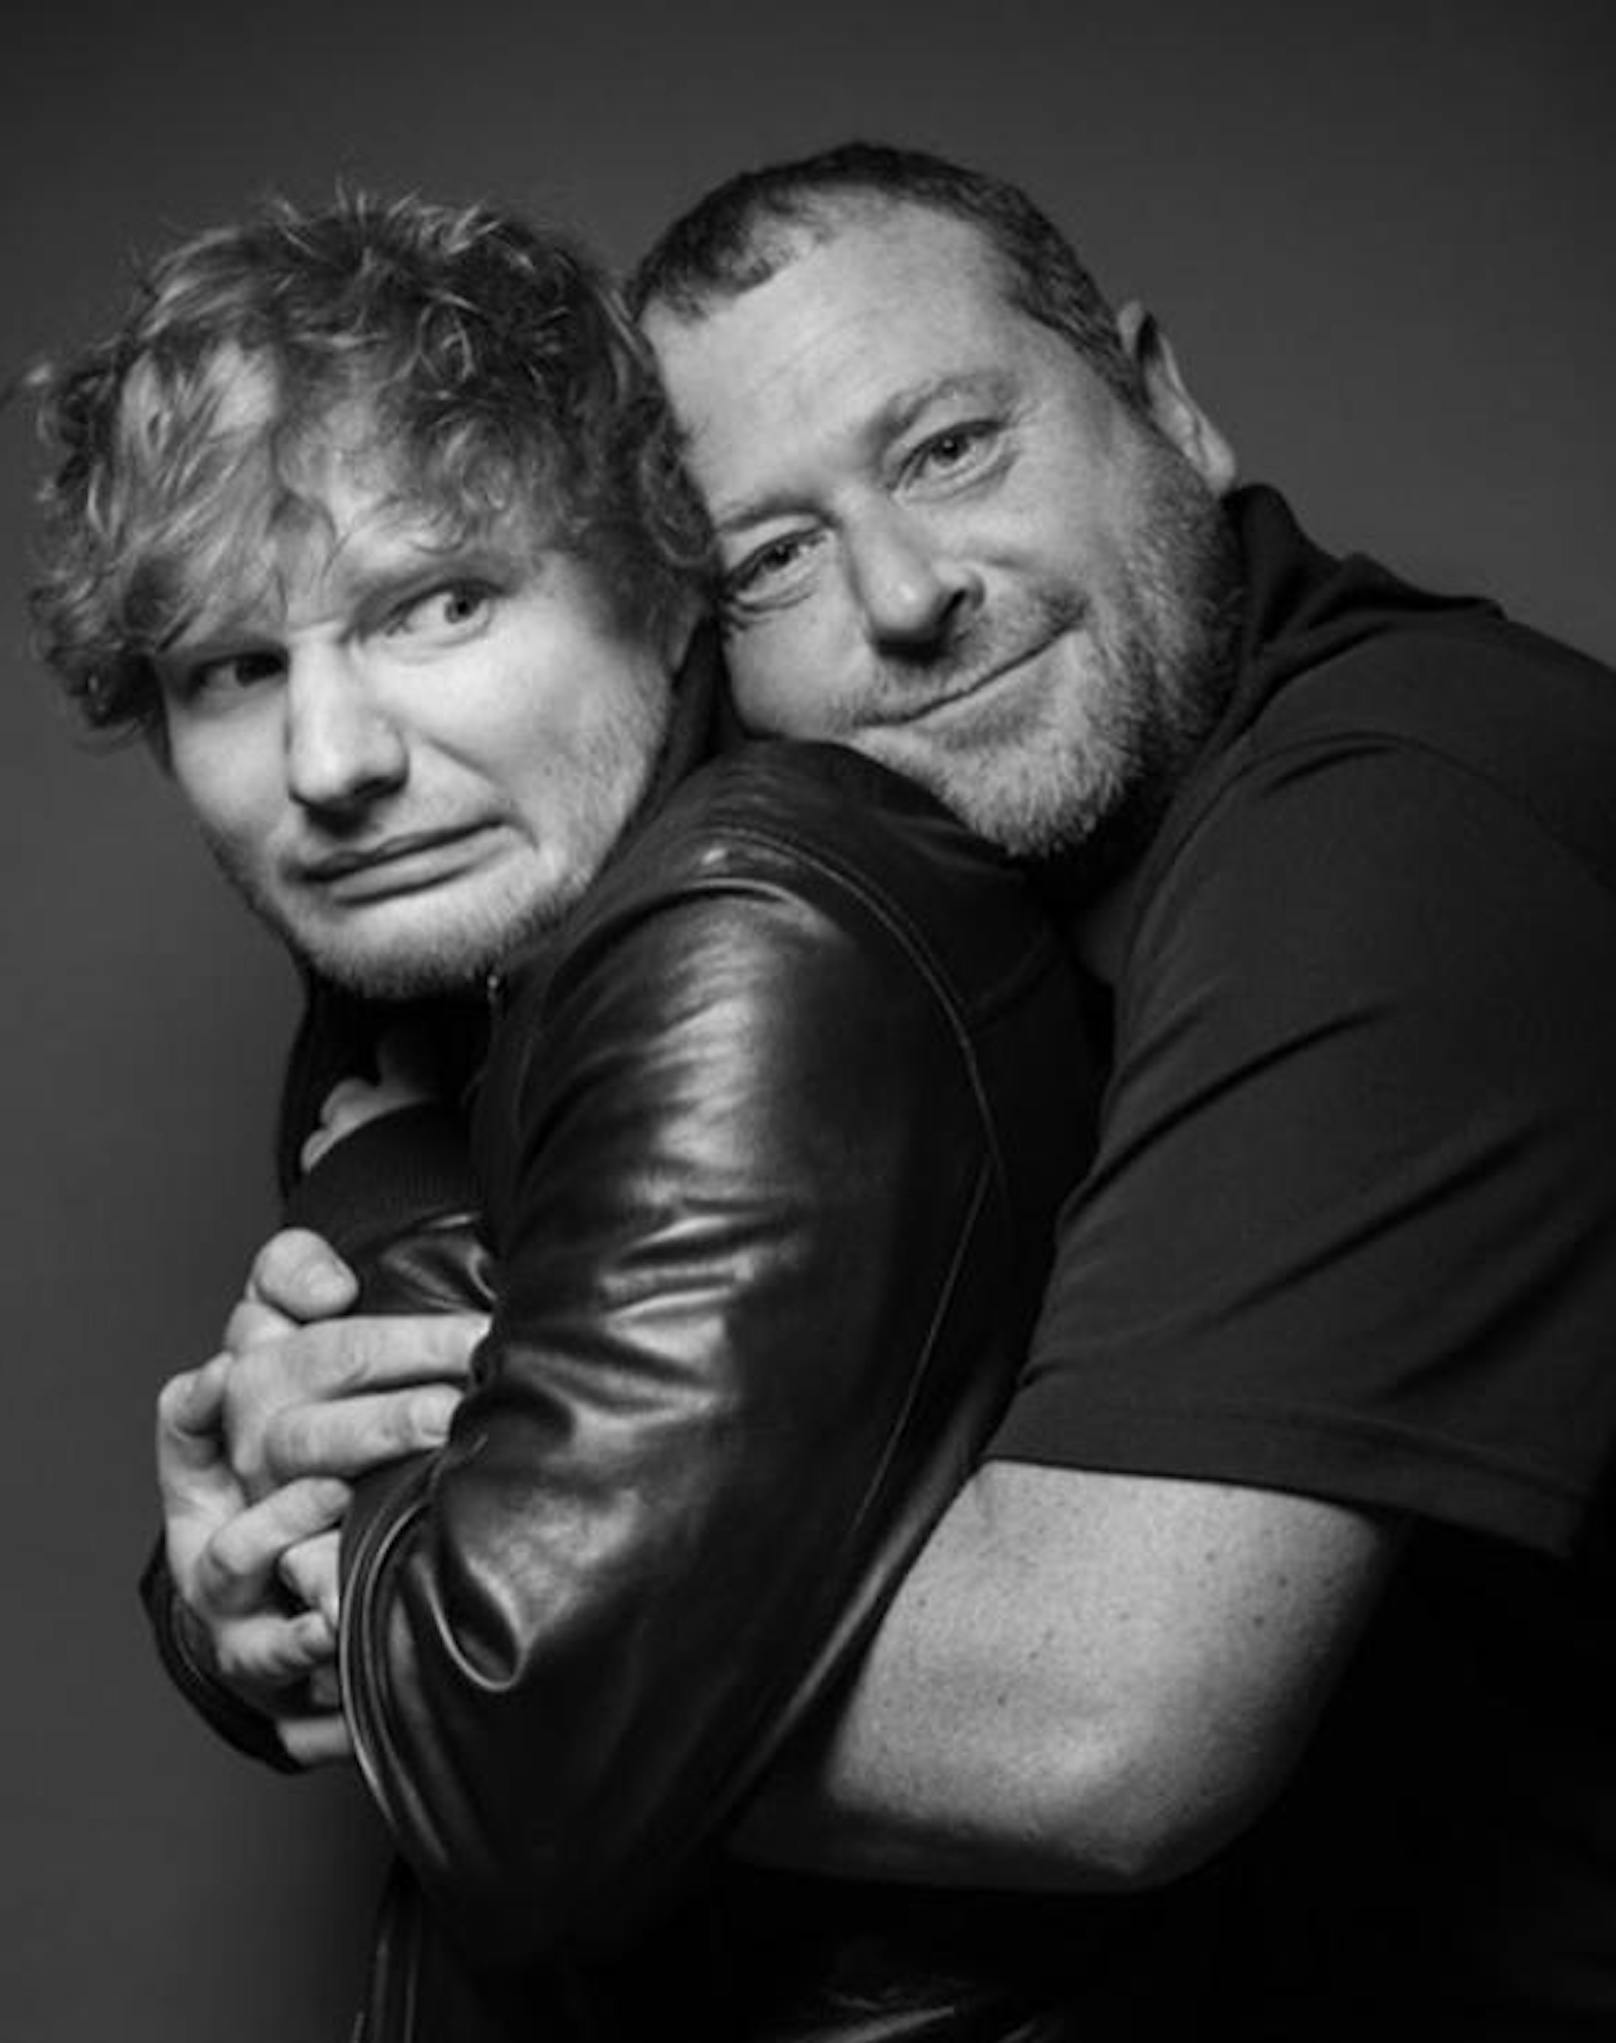 13.11.2017: Nach Brüchen an beiden Armen ist Ed Sheeran wieder zurück auf der Bühne. Das feiert er mit diesem Bild